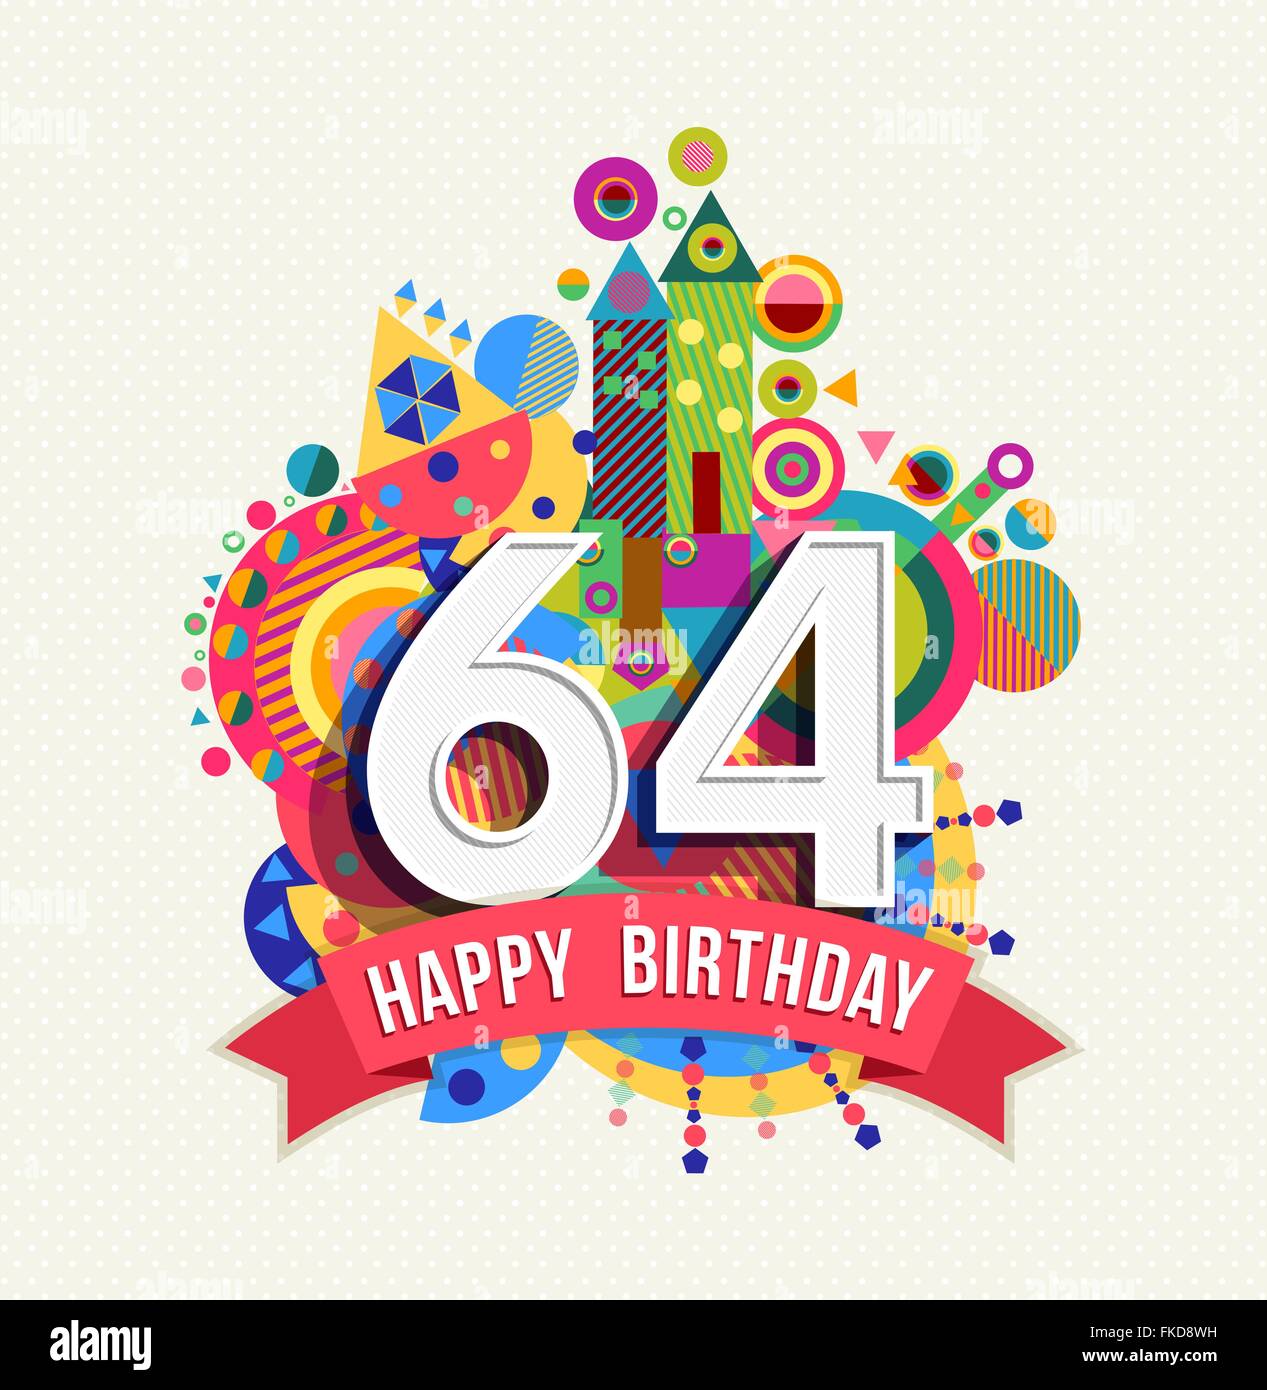 Joyeux anniversaire soixante quatre 64 ans, fun anniversaire carte postale avec des étiquettes de texte, nombre et géométrie colorée Illustration de Vecteur